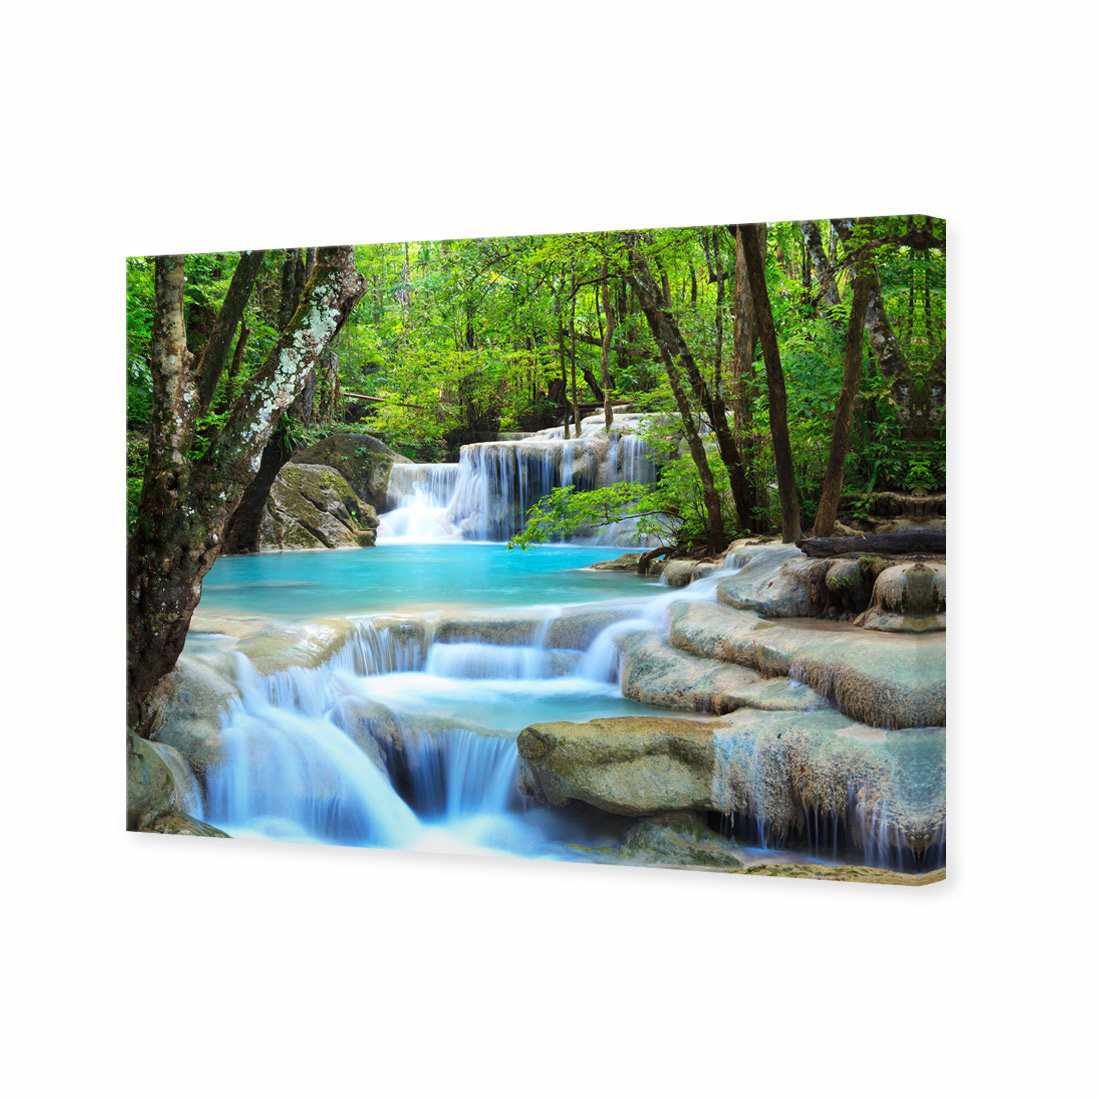 Soft Waterfalls Canvas Art-Canvas-Wall Art Designs-45x30cm-Canvas - No Frame-Wall Art Designs